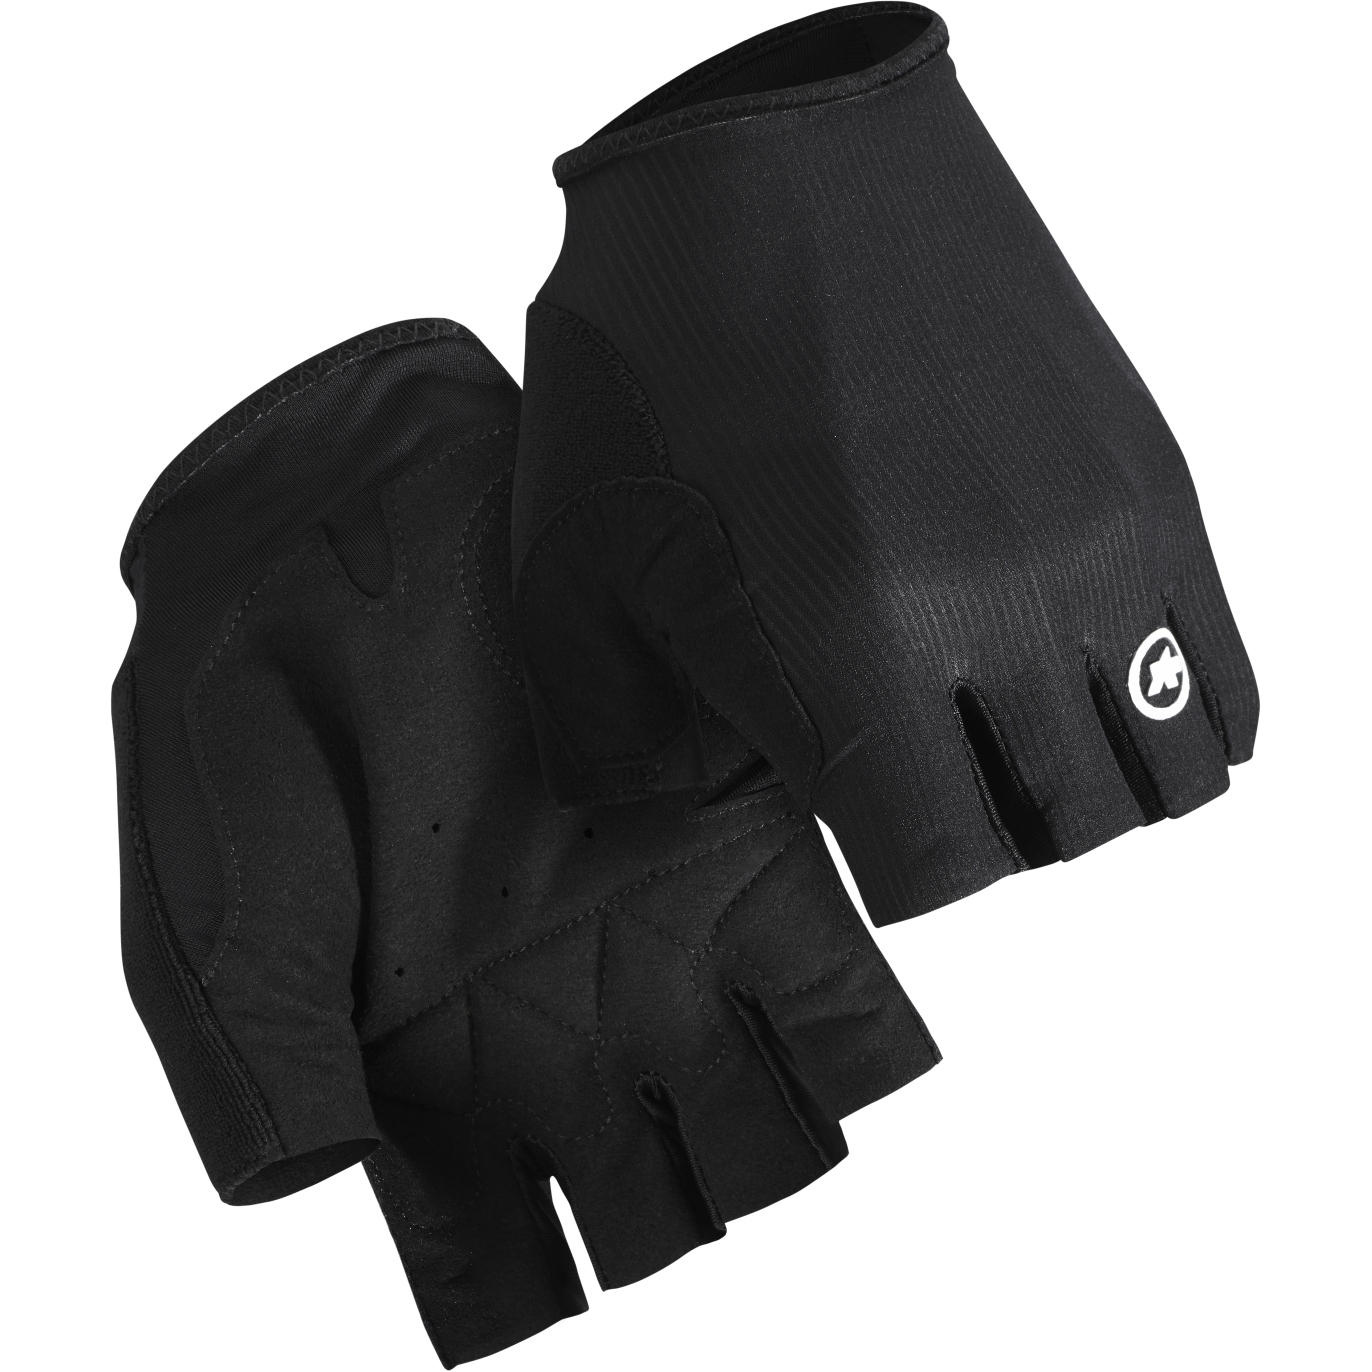 Productfoto van Assos RS TARGA Handschoenen met Korte Vingers - black series